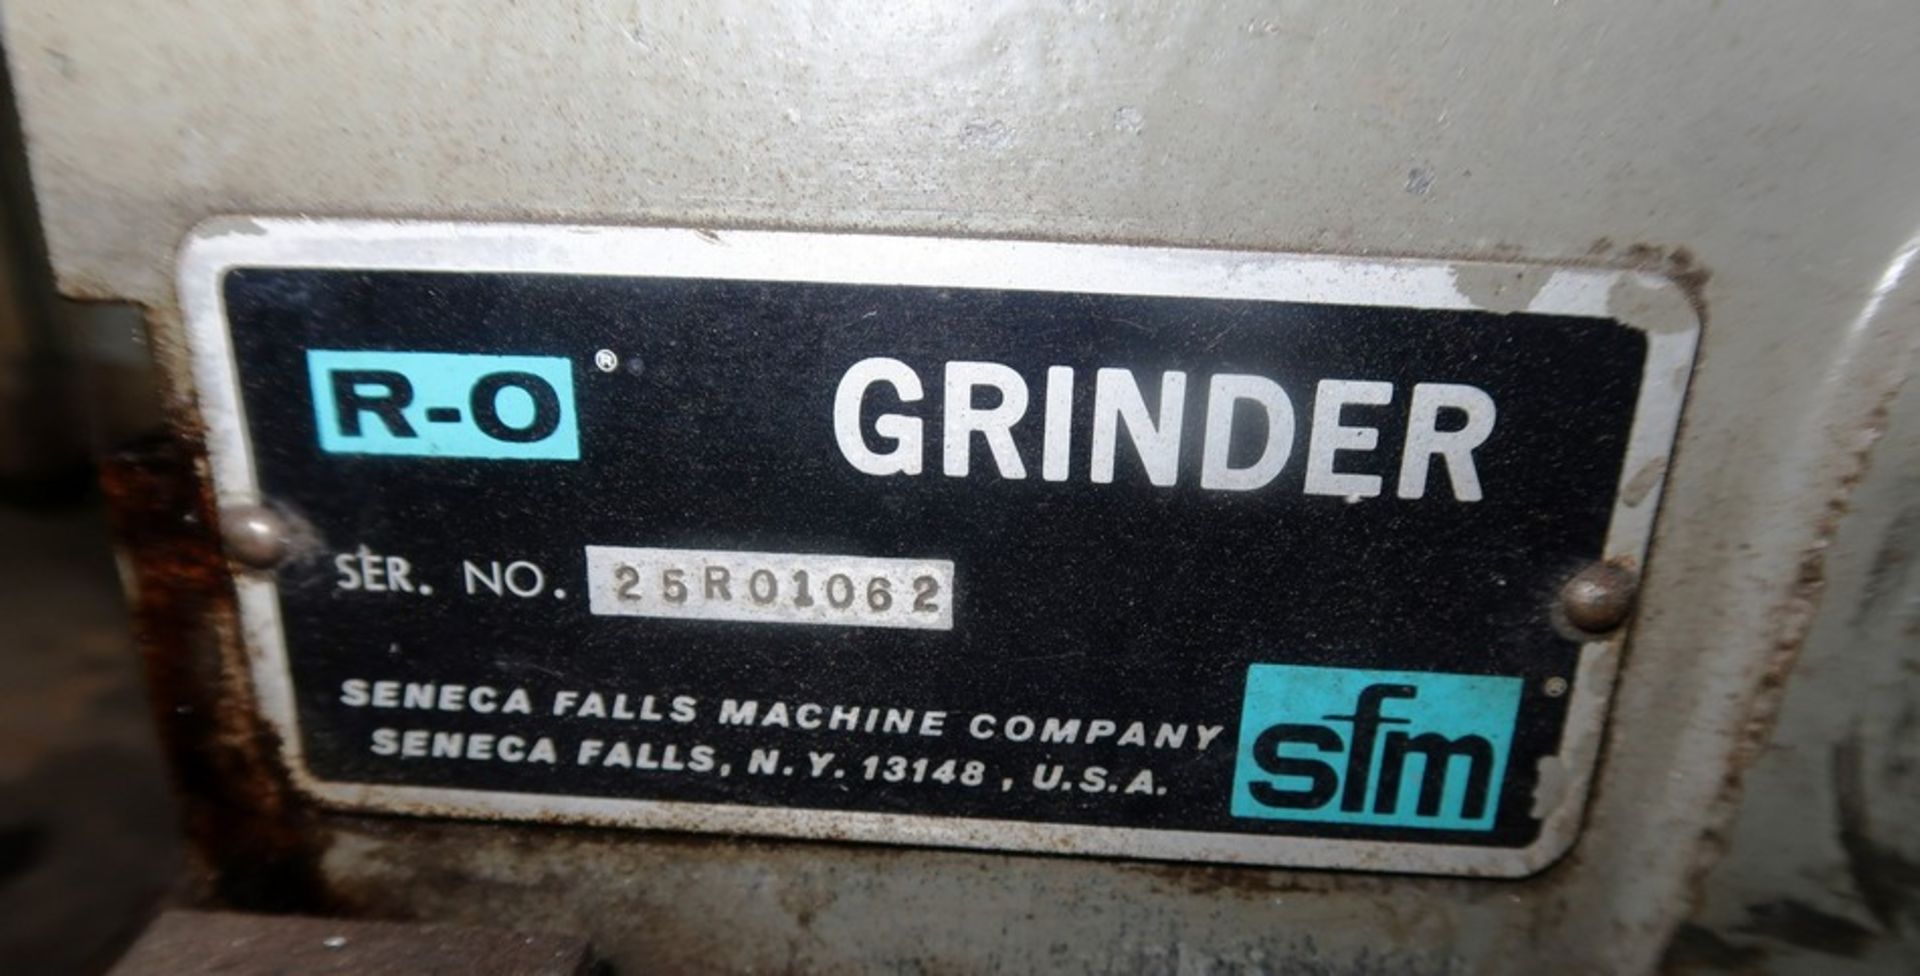 Seneca Falls R-O Form Relief Grinder, S/N 25R01062 - Image 3 of 3